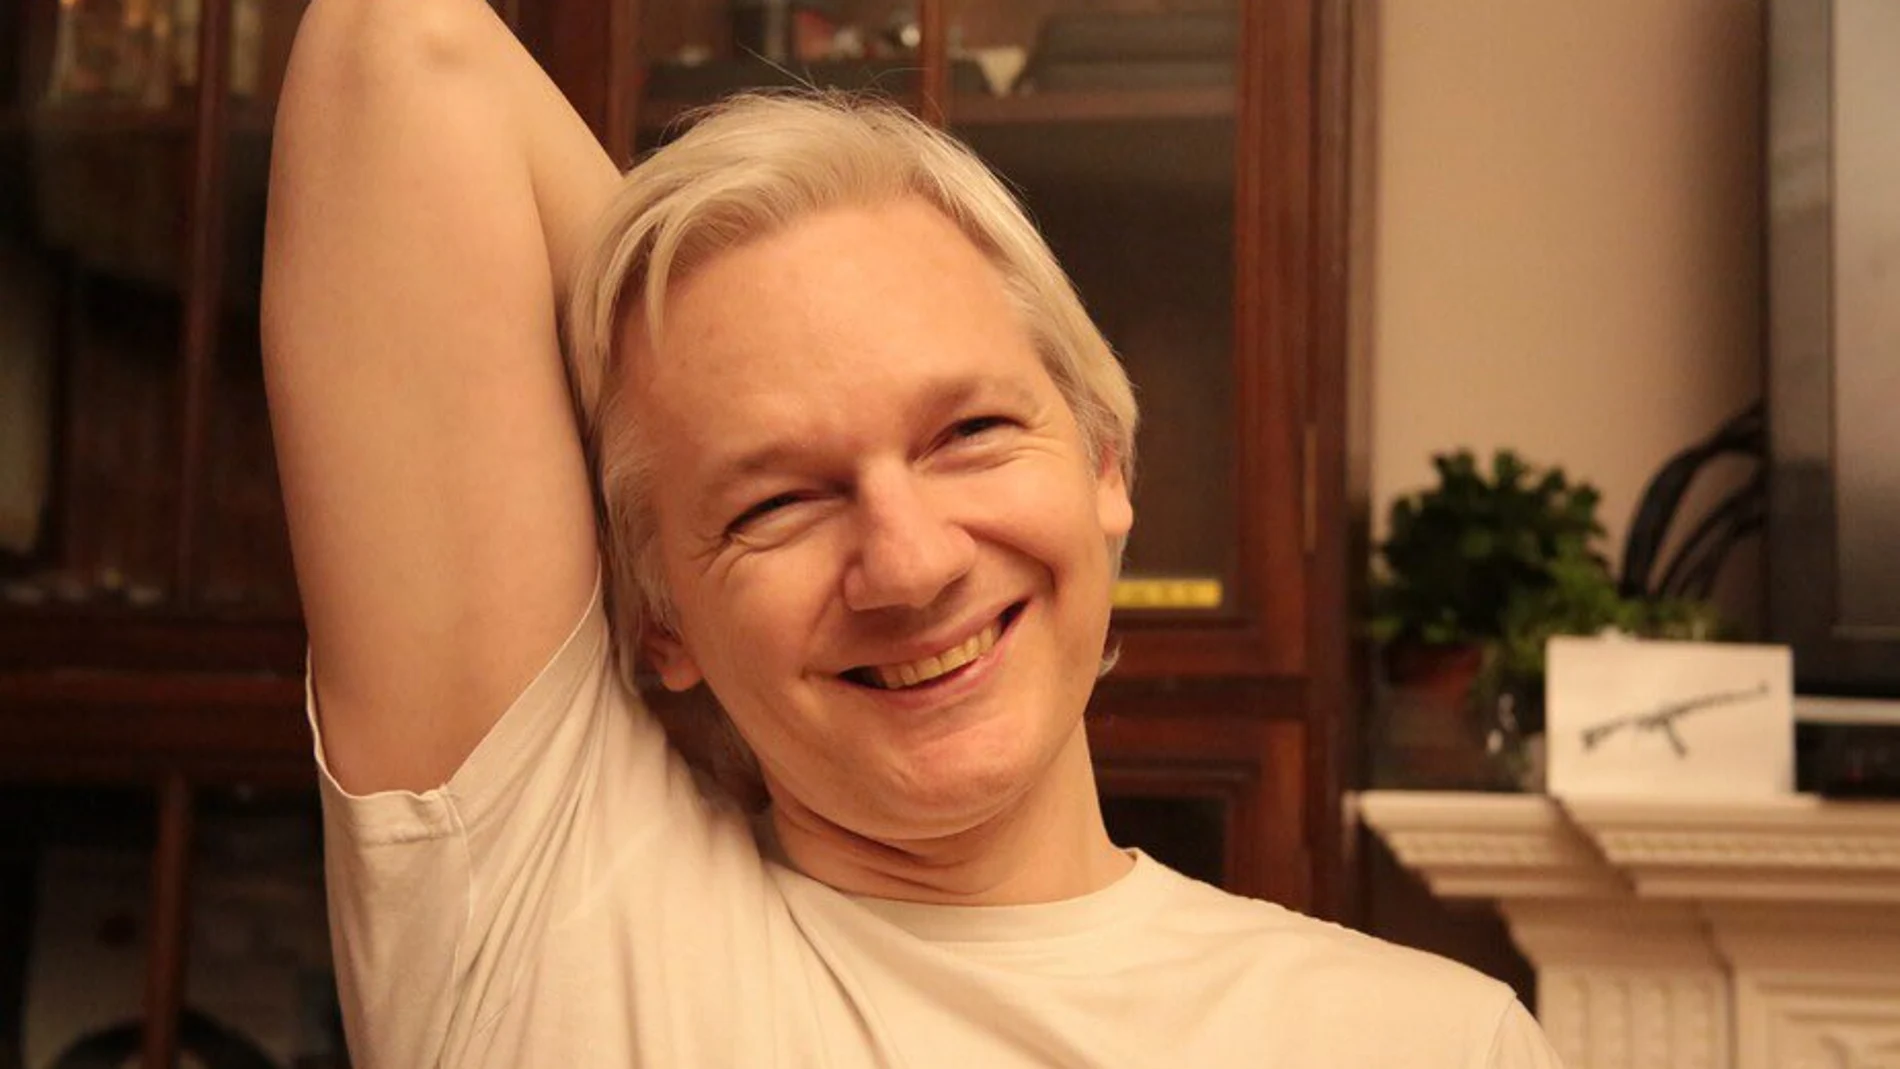 Imagen que ha publicado Assange en su cuenta de Twitter tras conocer la noticia